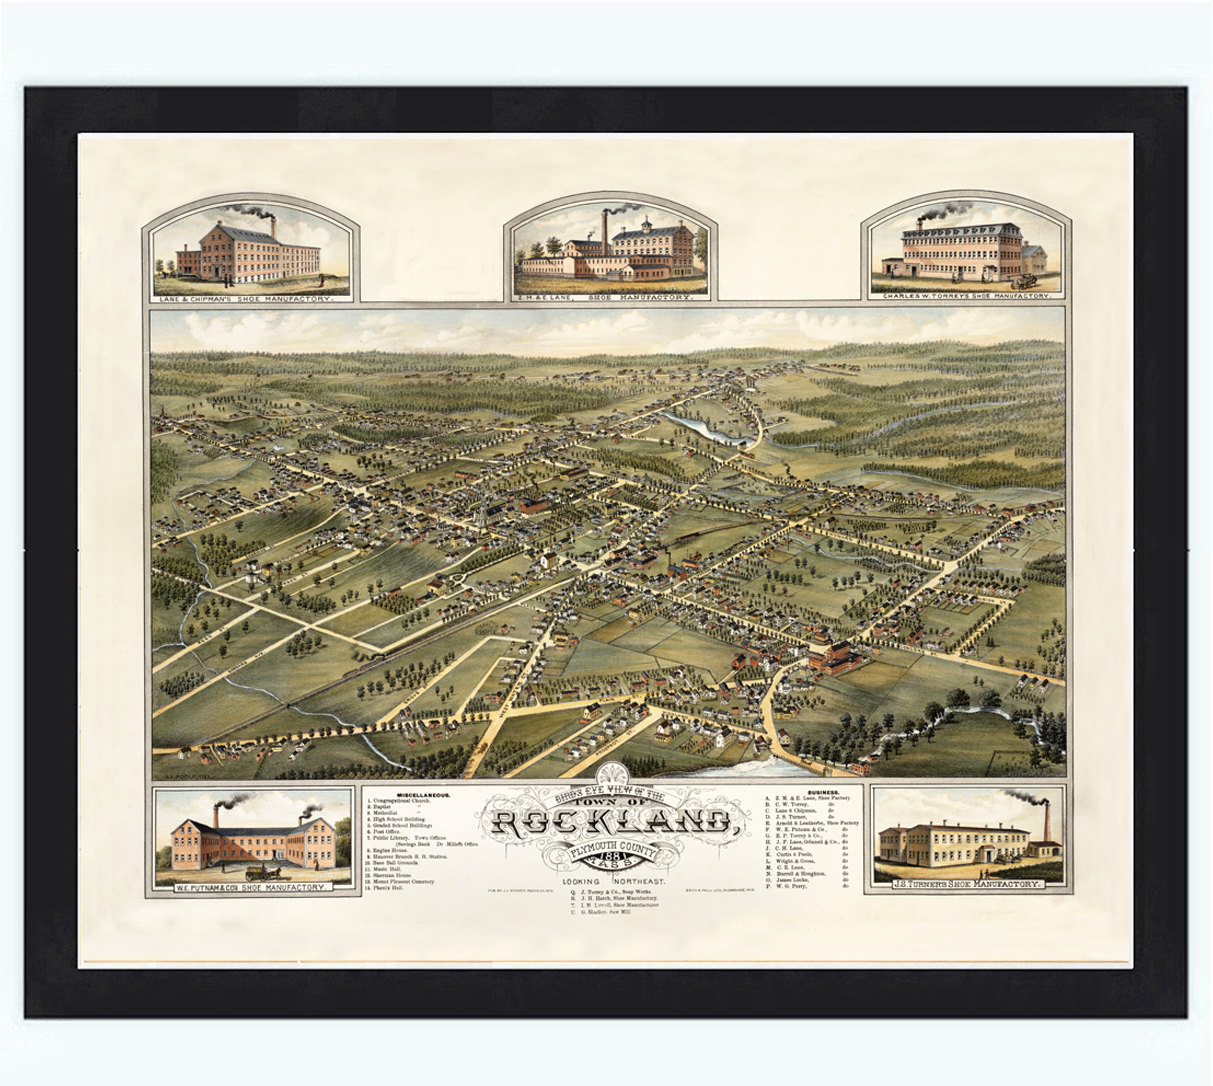 Birdseye View Of Rockland Massachusetts 1881, Panoramic View